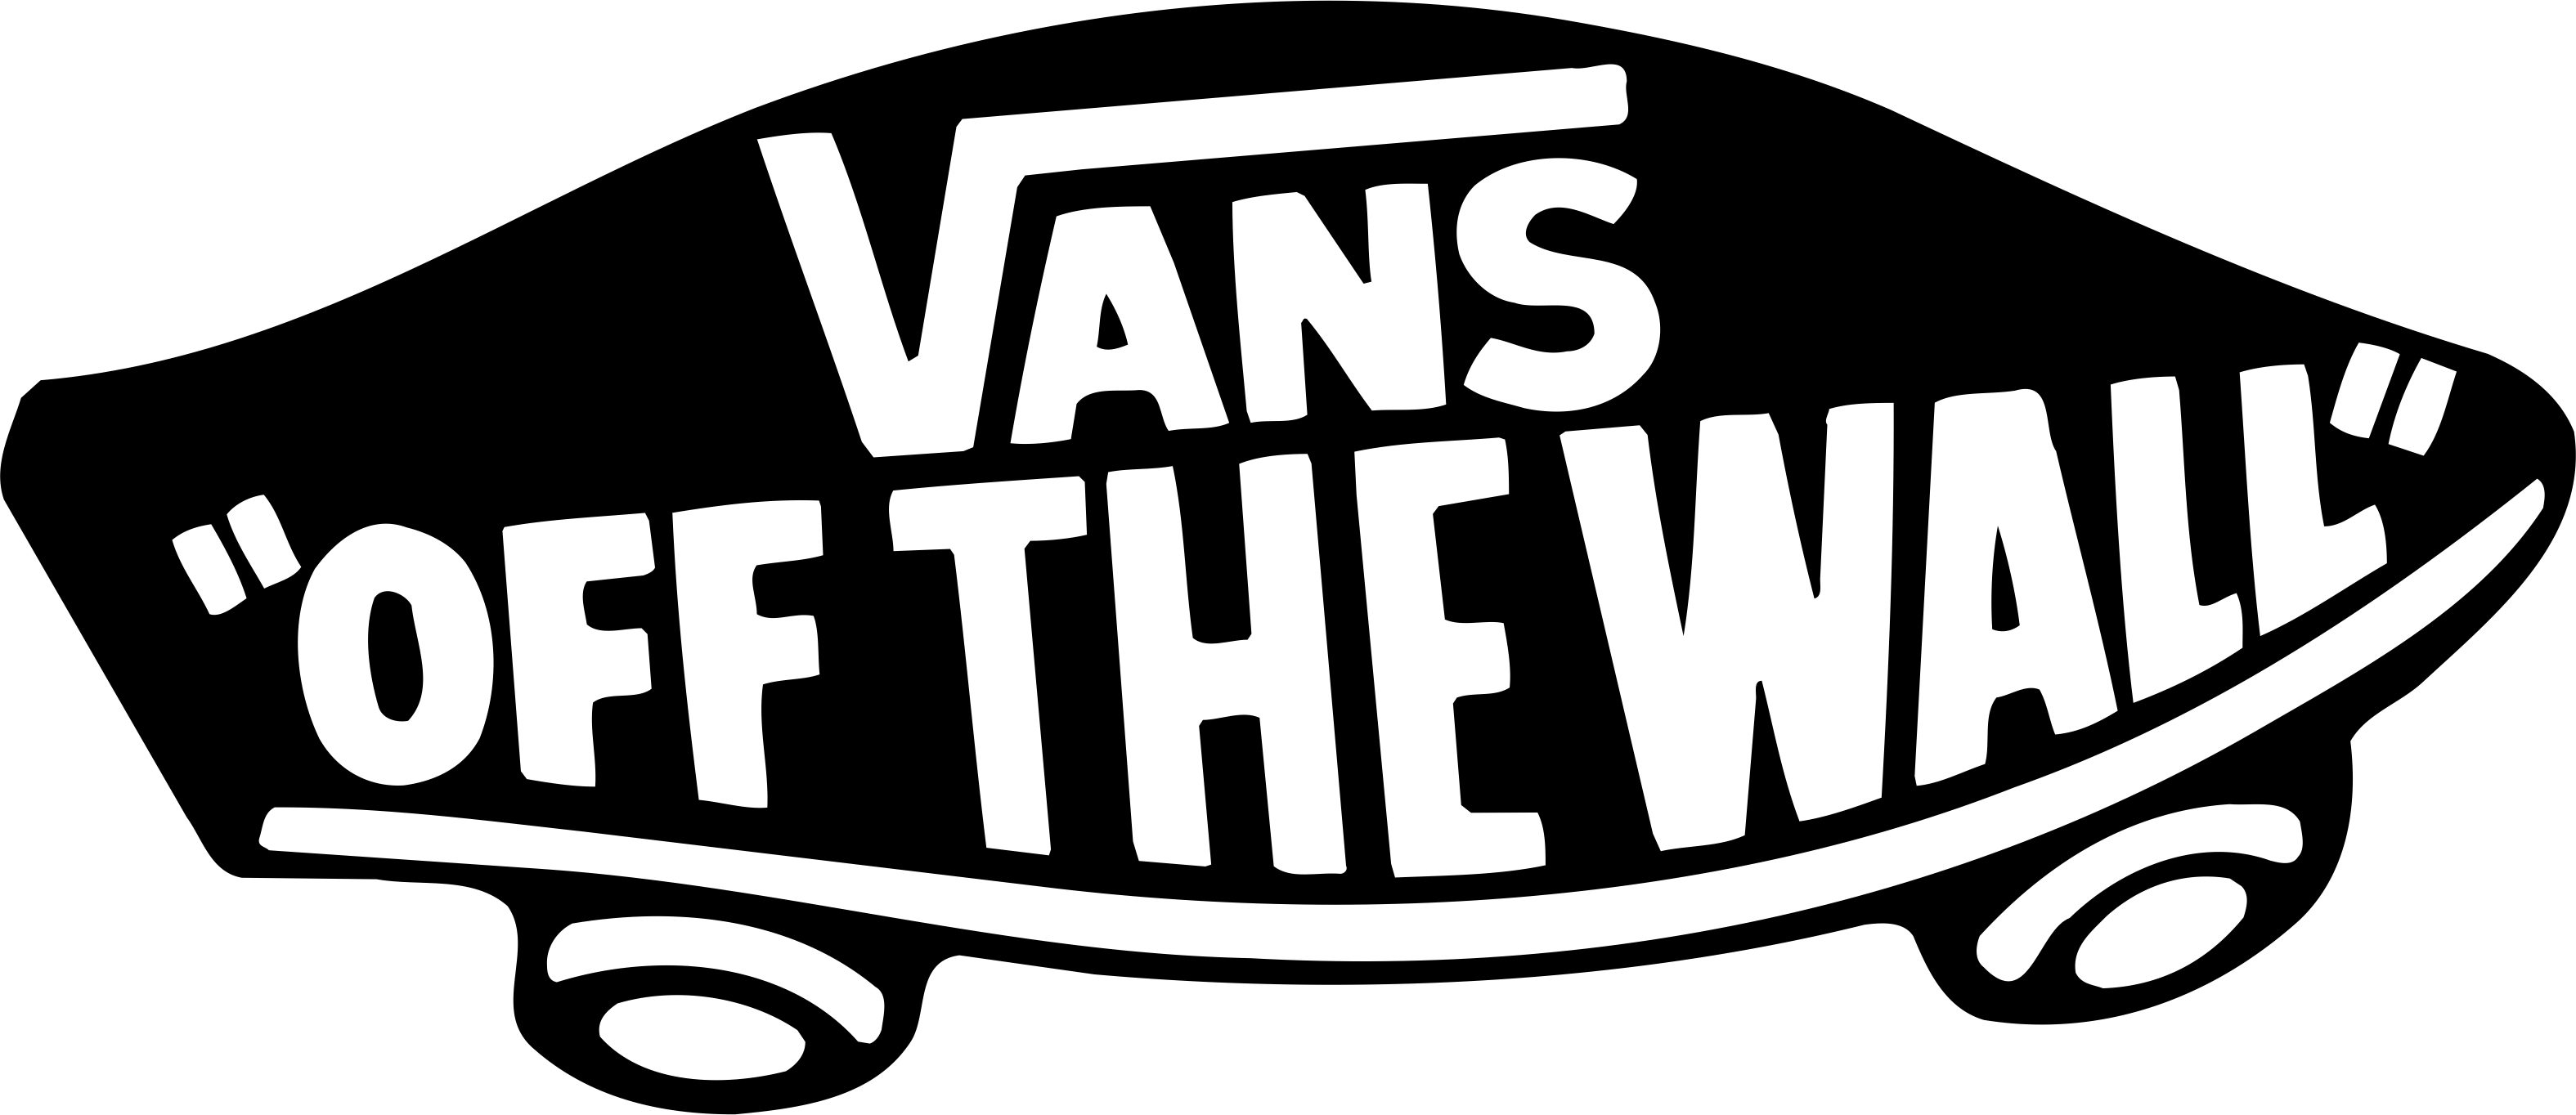 Cool Vans Logo - Vans